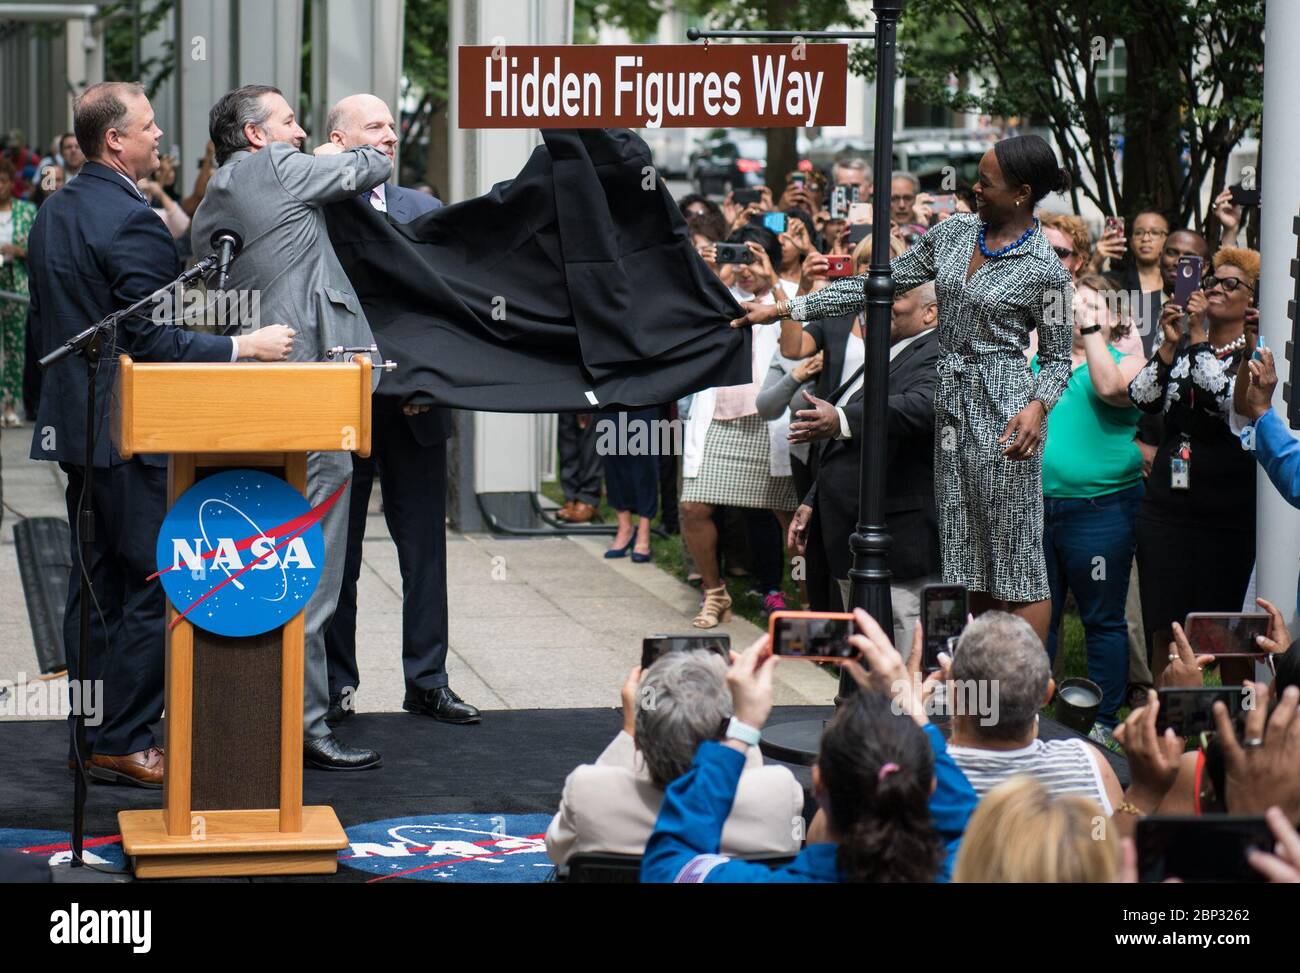 Dédicace « Hidden Figures Way » l'administrateur de la NASA, Jim Bridenstine, à gauche, le sénateur américain Ted Cruz, R-Texas, deuxième de gauche, le président du Conseil de D.C. Phil Mendelson, troisième de gauche, Et Margot Lee Shetterly, auteur du livre "Hidden Figures", à droite, dévoile le panneau "Hidden Figures Way" lors d'une cérémonie de dédicace, le mercredi 12 juin 2019 au siège de la NASA à Washington, DC. Le 300 bloc de E Street SW devant le siège de la NASA a été désigné comme "Hidden Figures Way" pour honorer Katherine Johnson, Dorothy Vaughan, Mary Jackson et toutes les femmes wh Banque D'Images